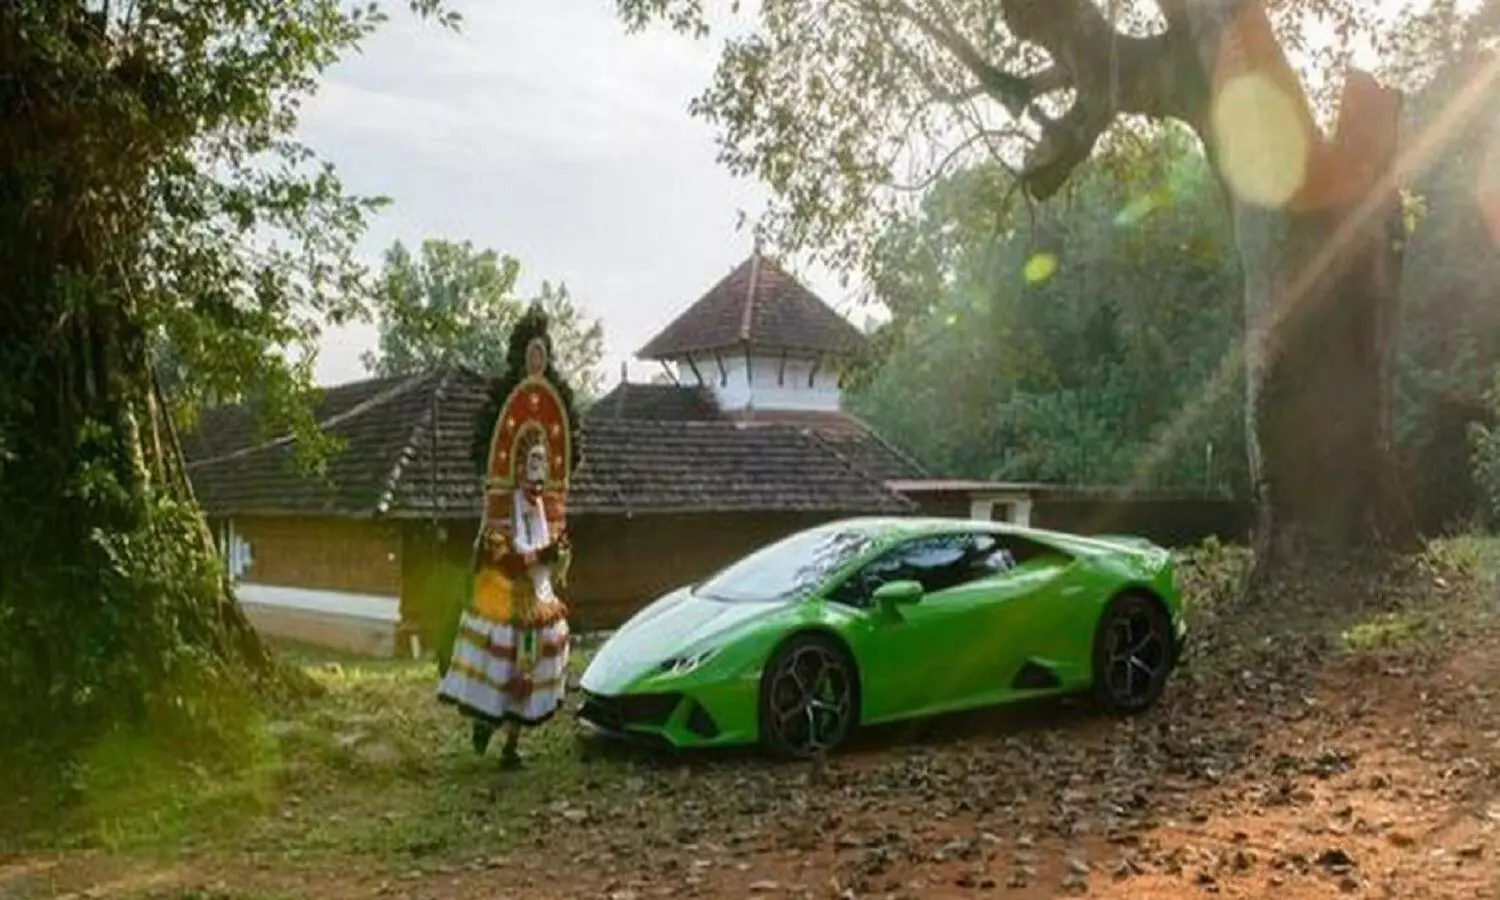 कबाड़ के जुगाड़ से बना दी Home Made Lamborghini, लोग बोले ये तो इंडिया का एलन मस्क है